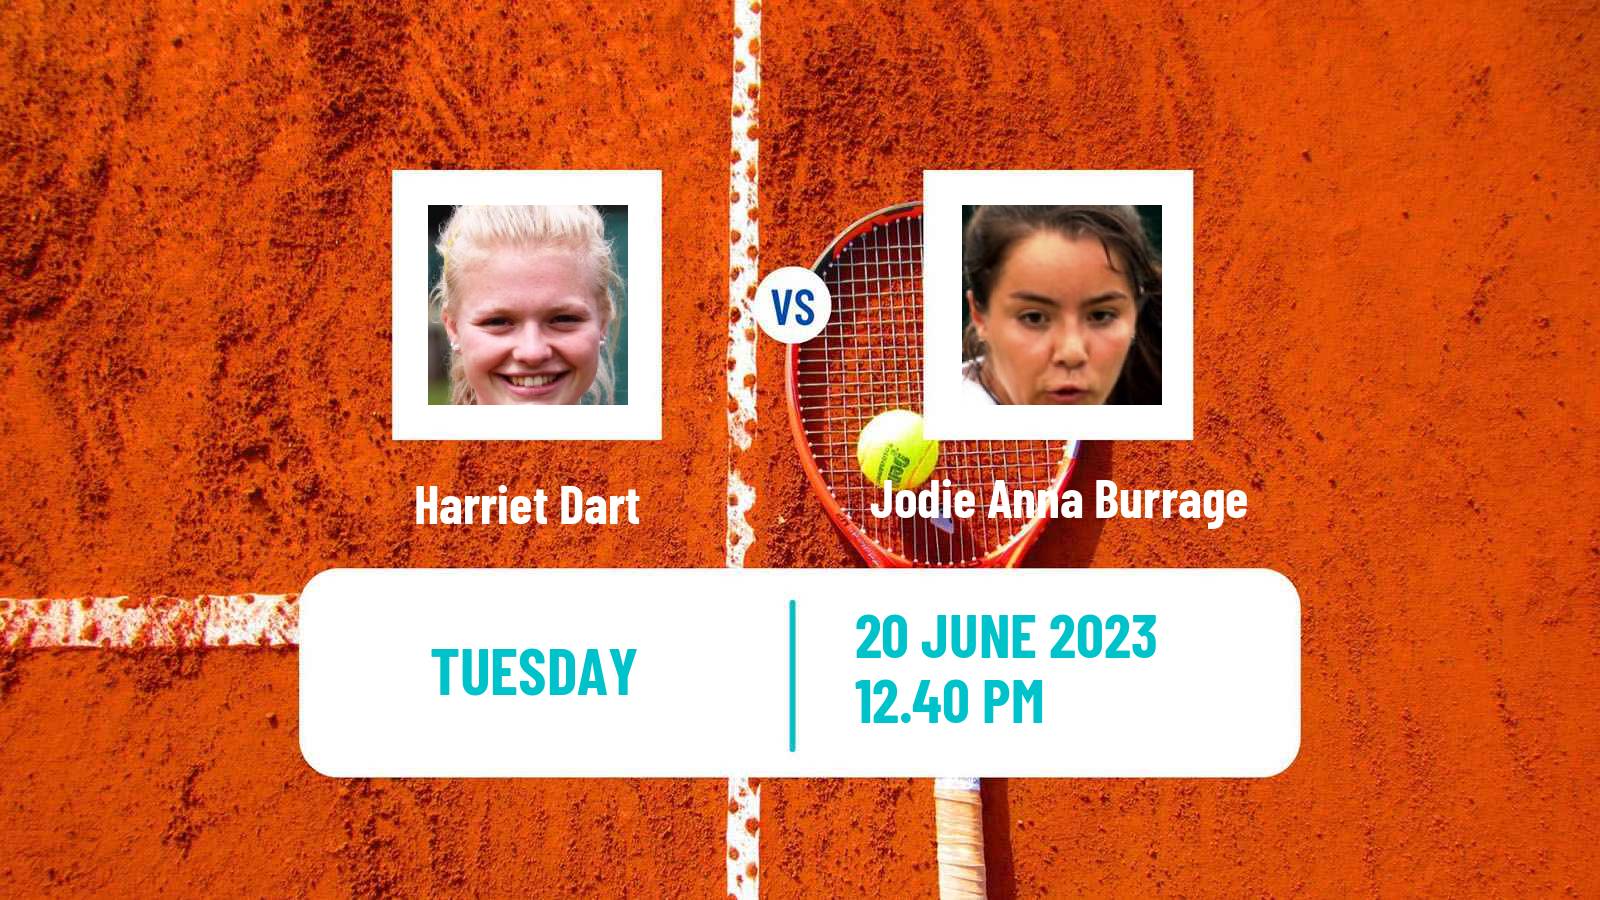 Tennis WTA Birmingham Harriet Dart - Jodie Anna Burrage